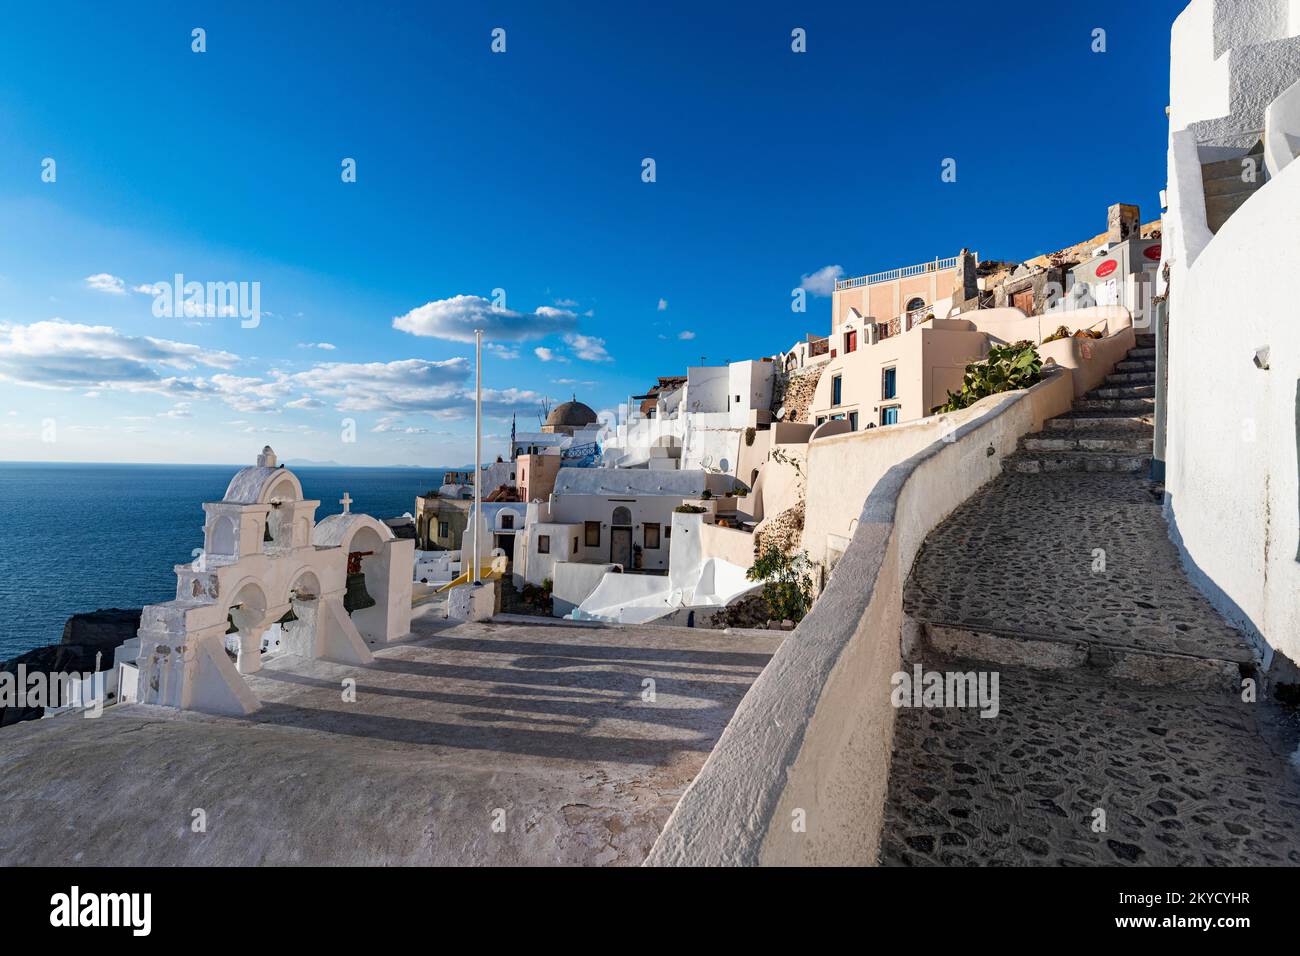 Whitewashed architecture, Oia, Santorini, Greece Stock Photo